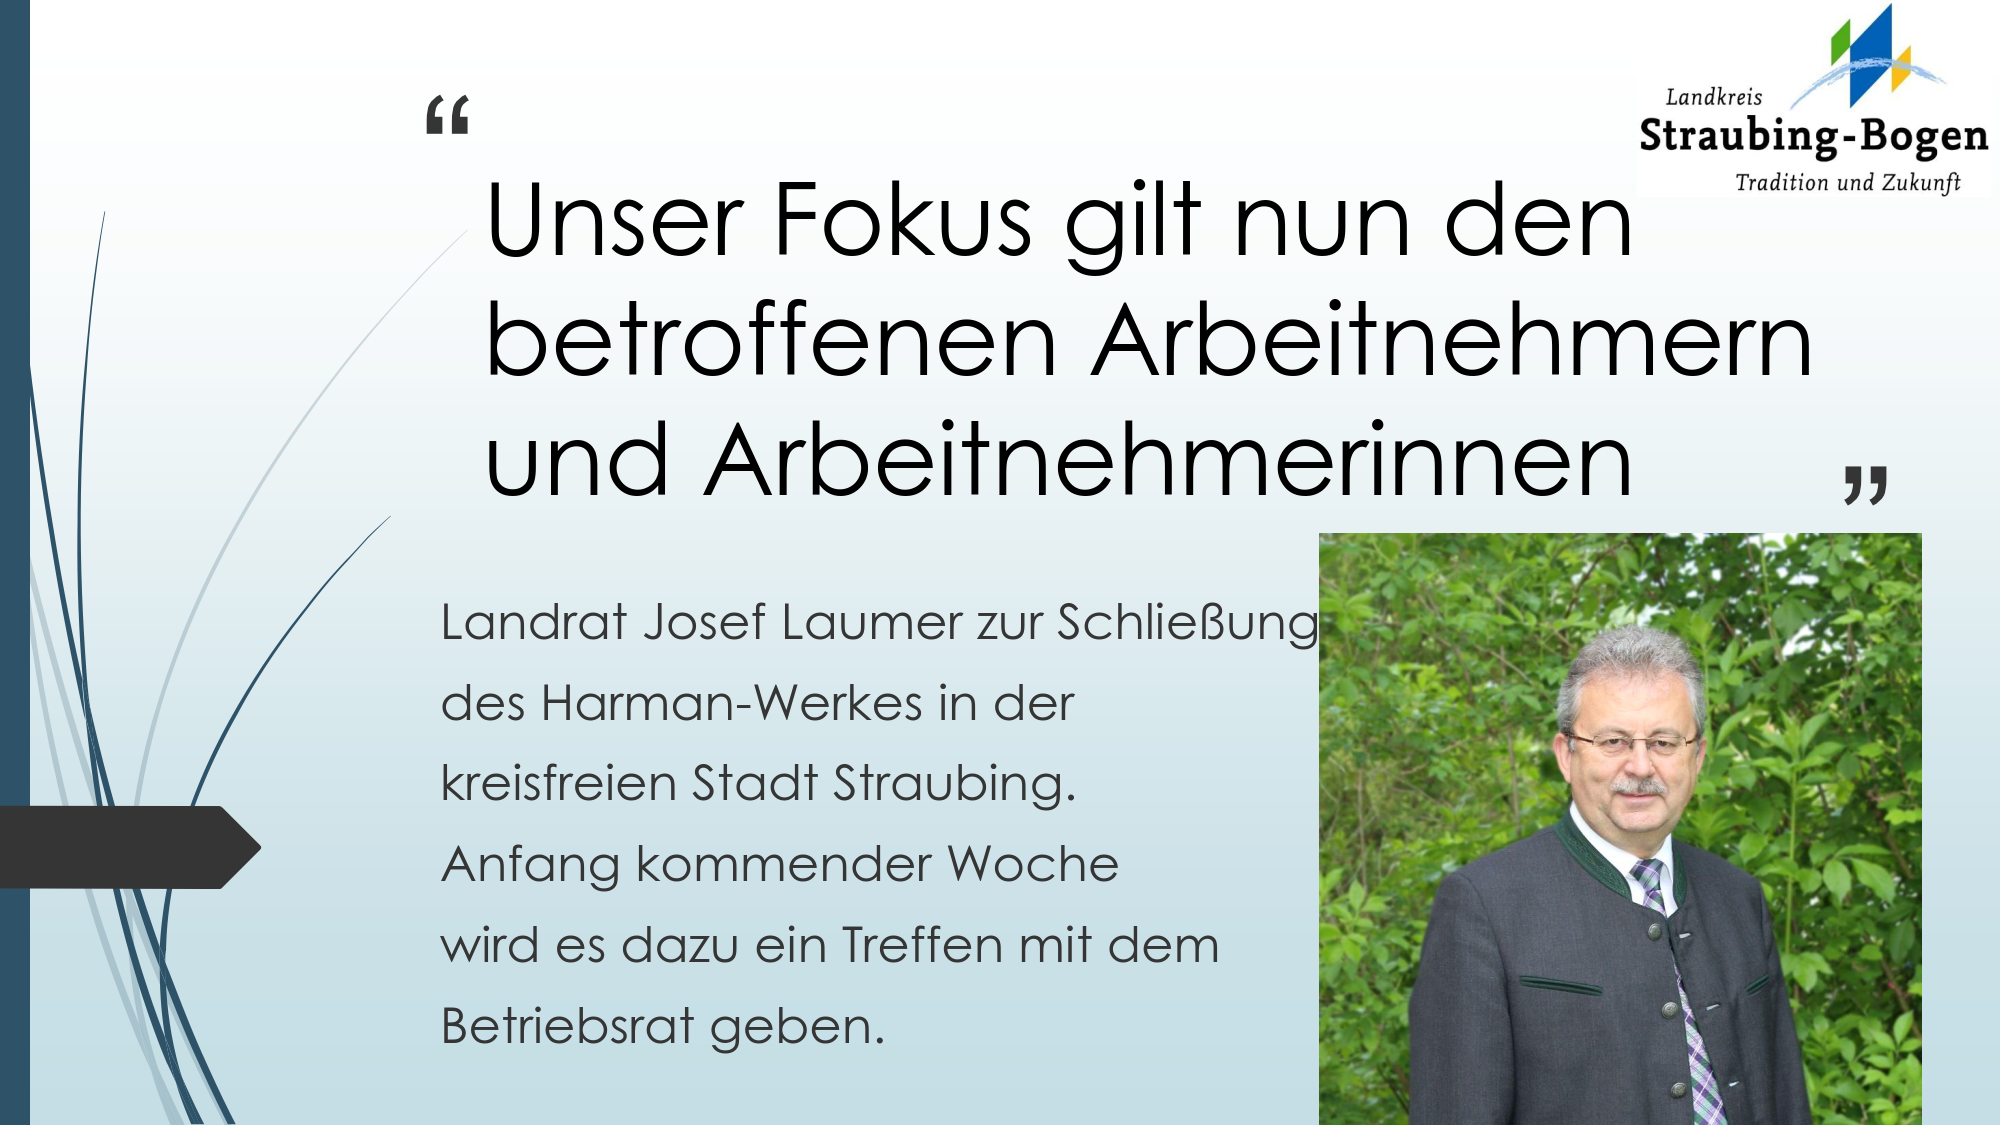 Statement von Landrat Josef Laumer zur Schließung des Harman-Werkes in der kreisfreien Stadt Straubing